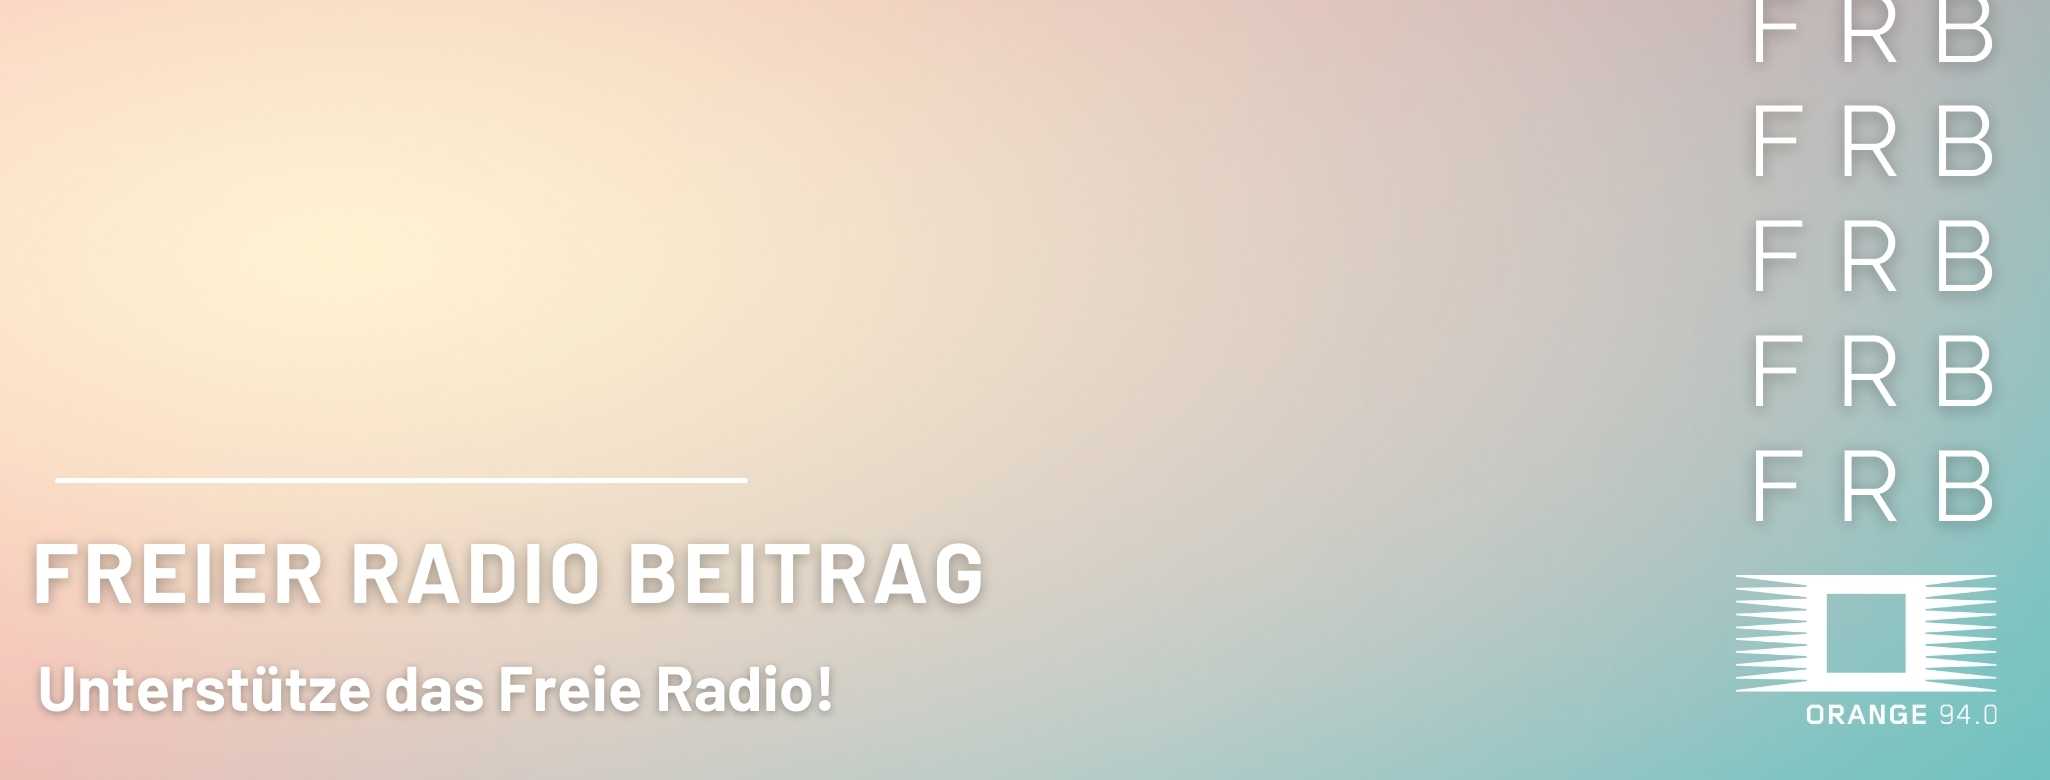 Banner mit ORANGE 94.0 Logo und dem Schriftzug Freier Radio Beitrag